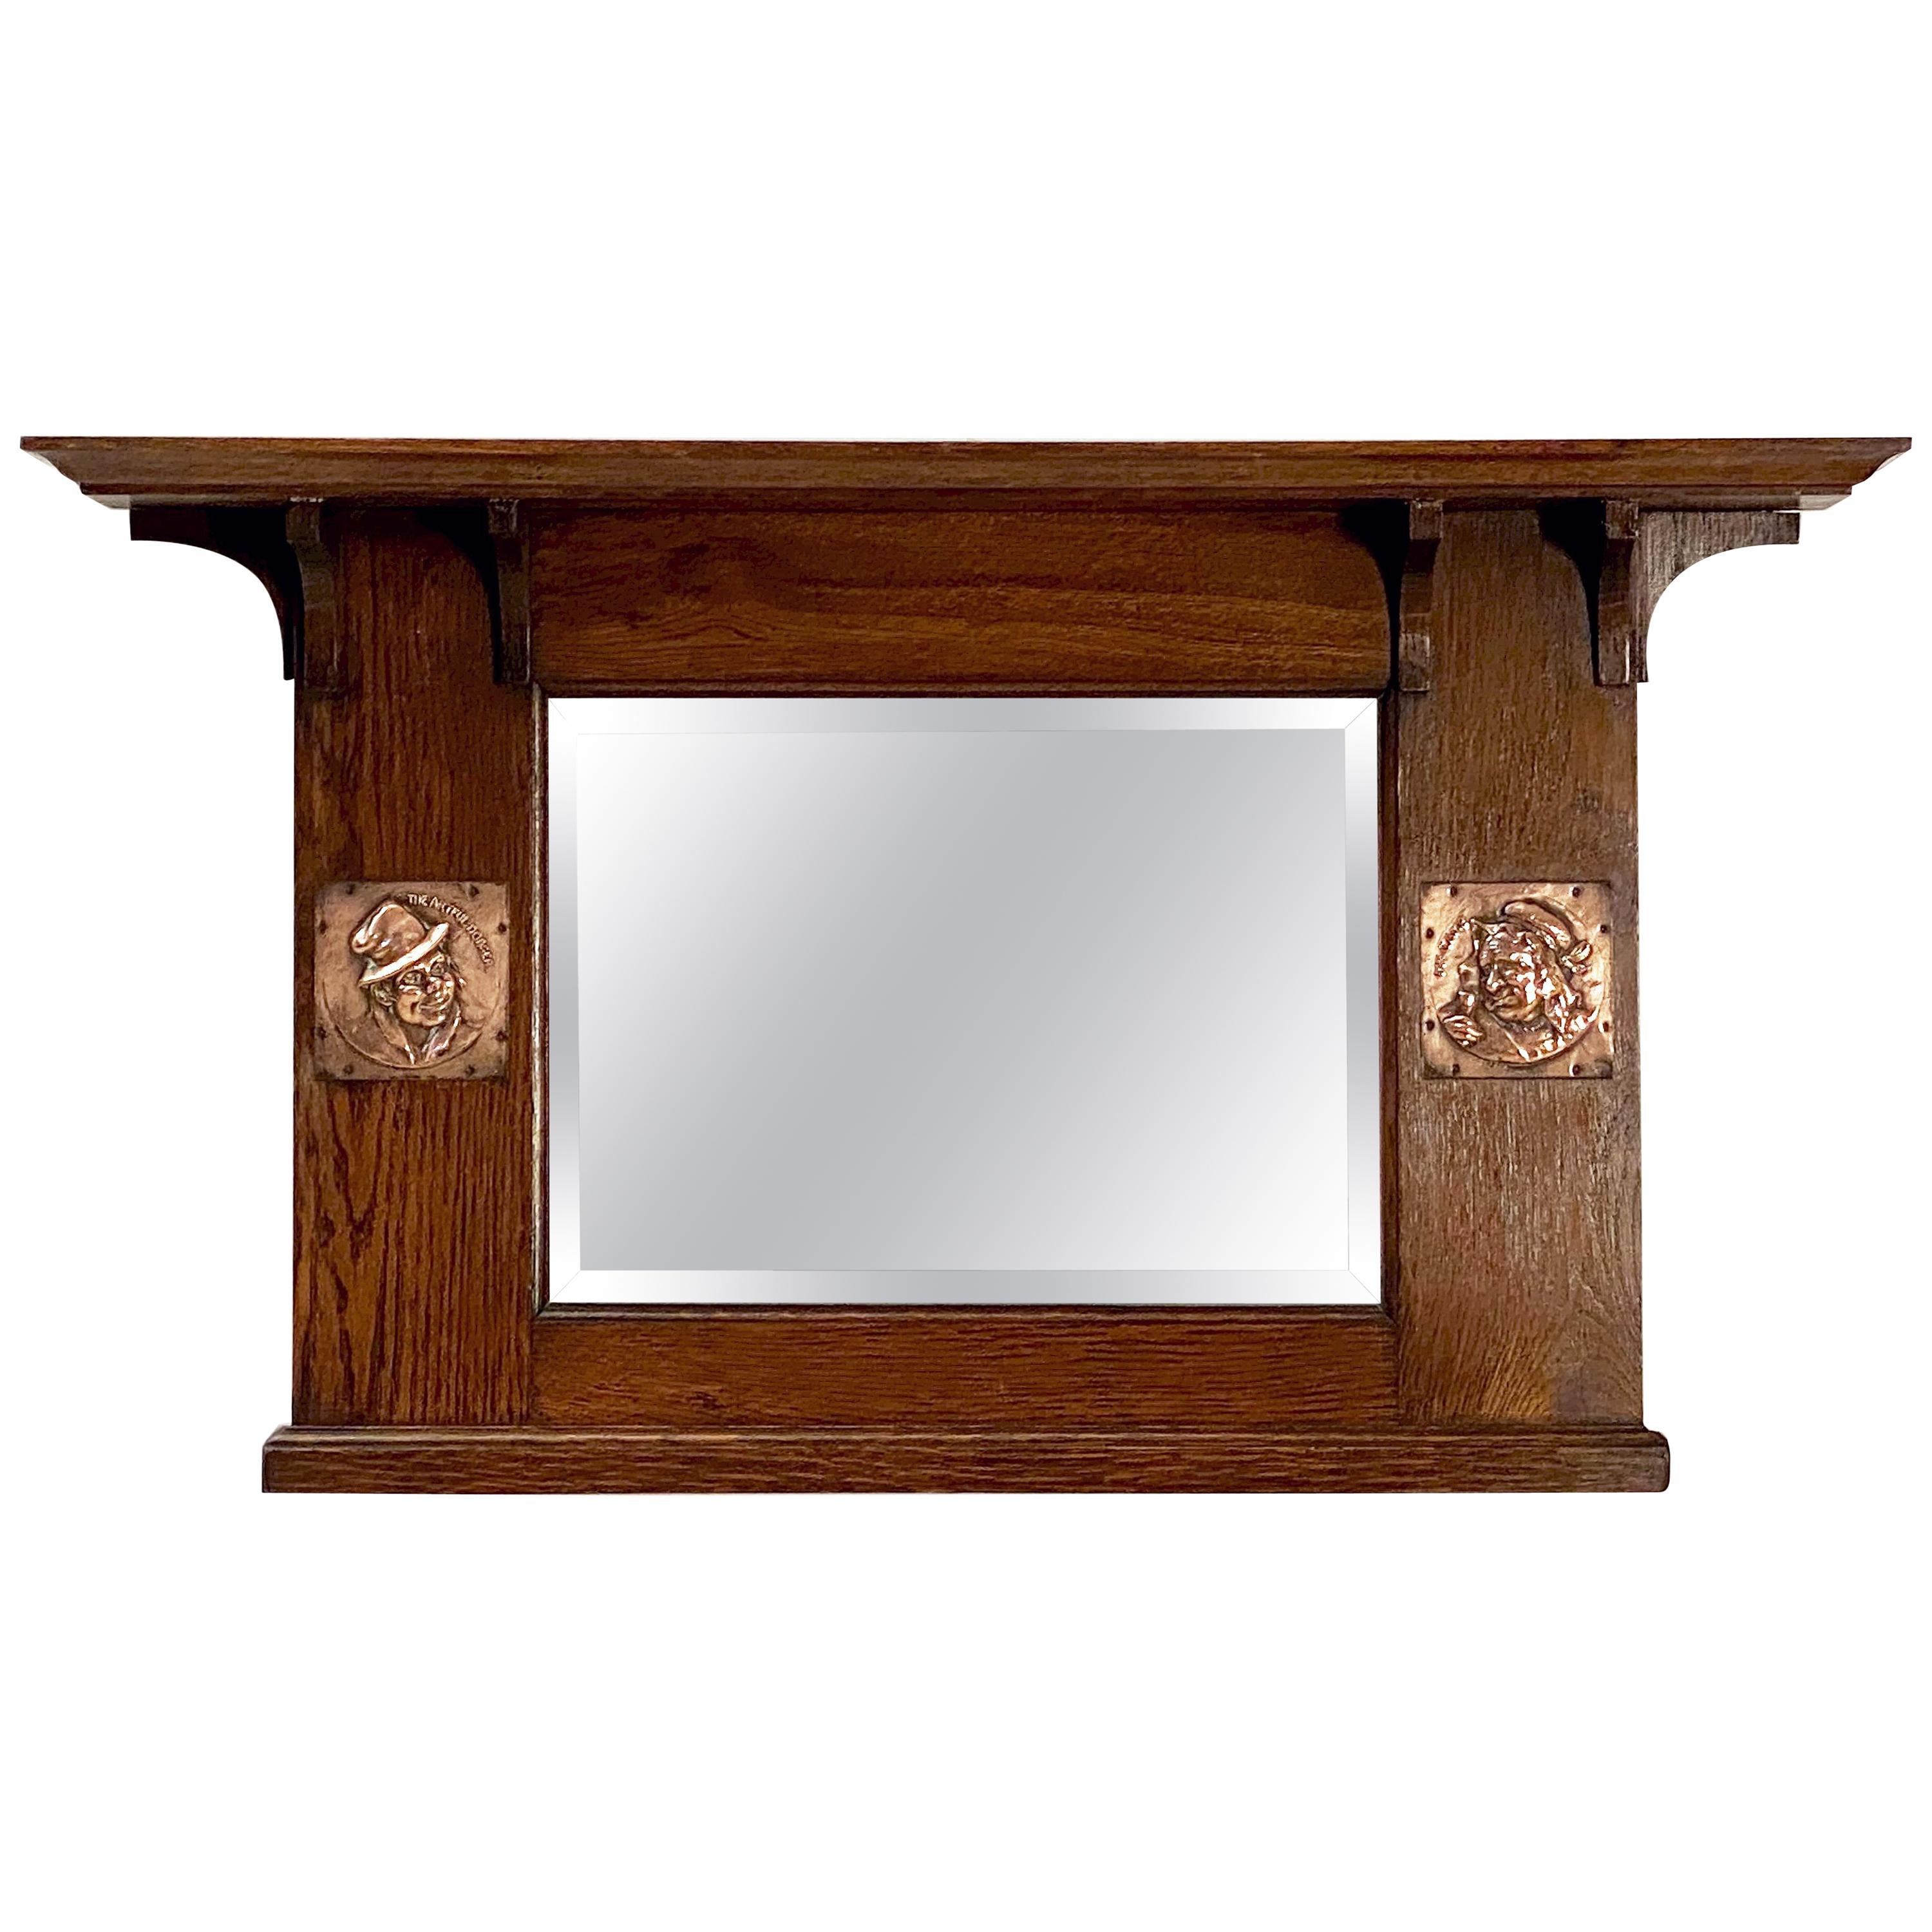 Miroir à trumeau biseauté de l'époque Arts and Crafts avec cadre en chêne (H 18 x L 32)